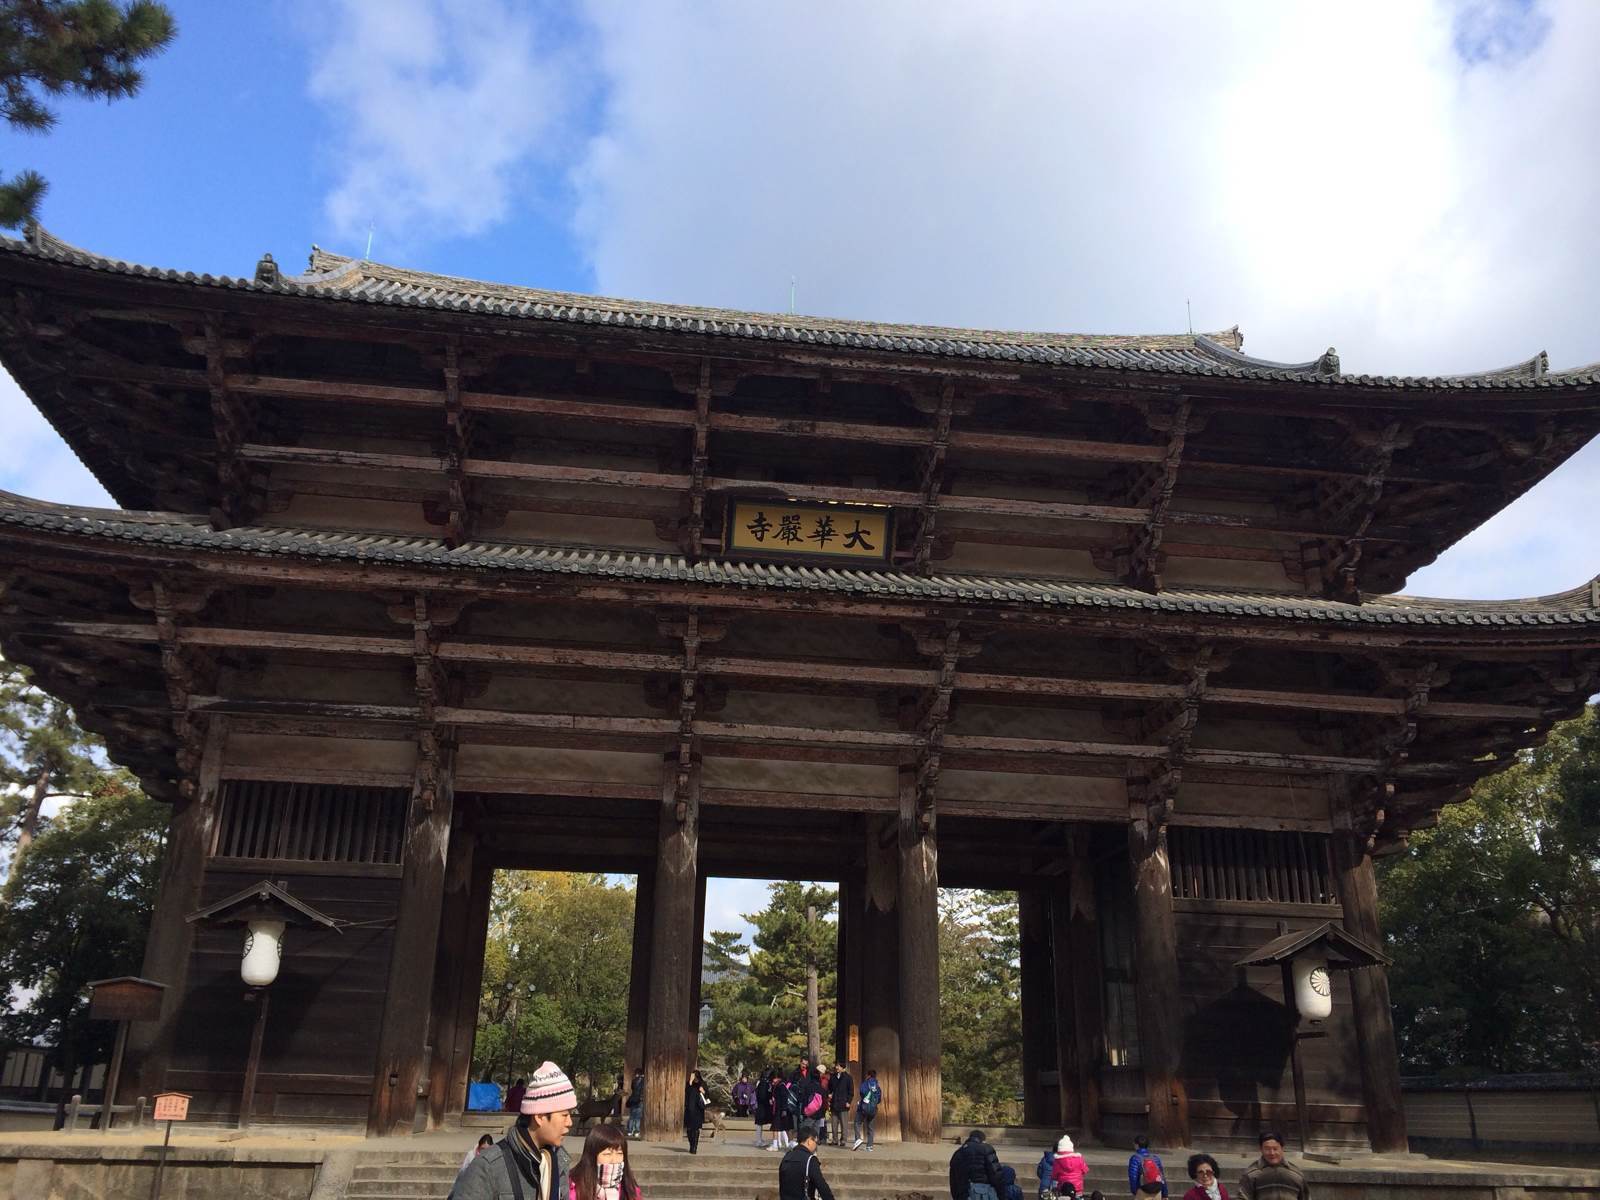 后来进殿才知道,这是镰仓时代的建筑了 东大寺